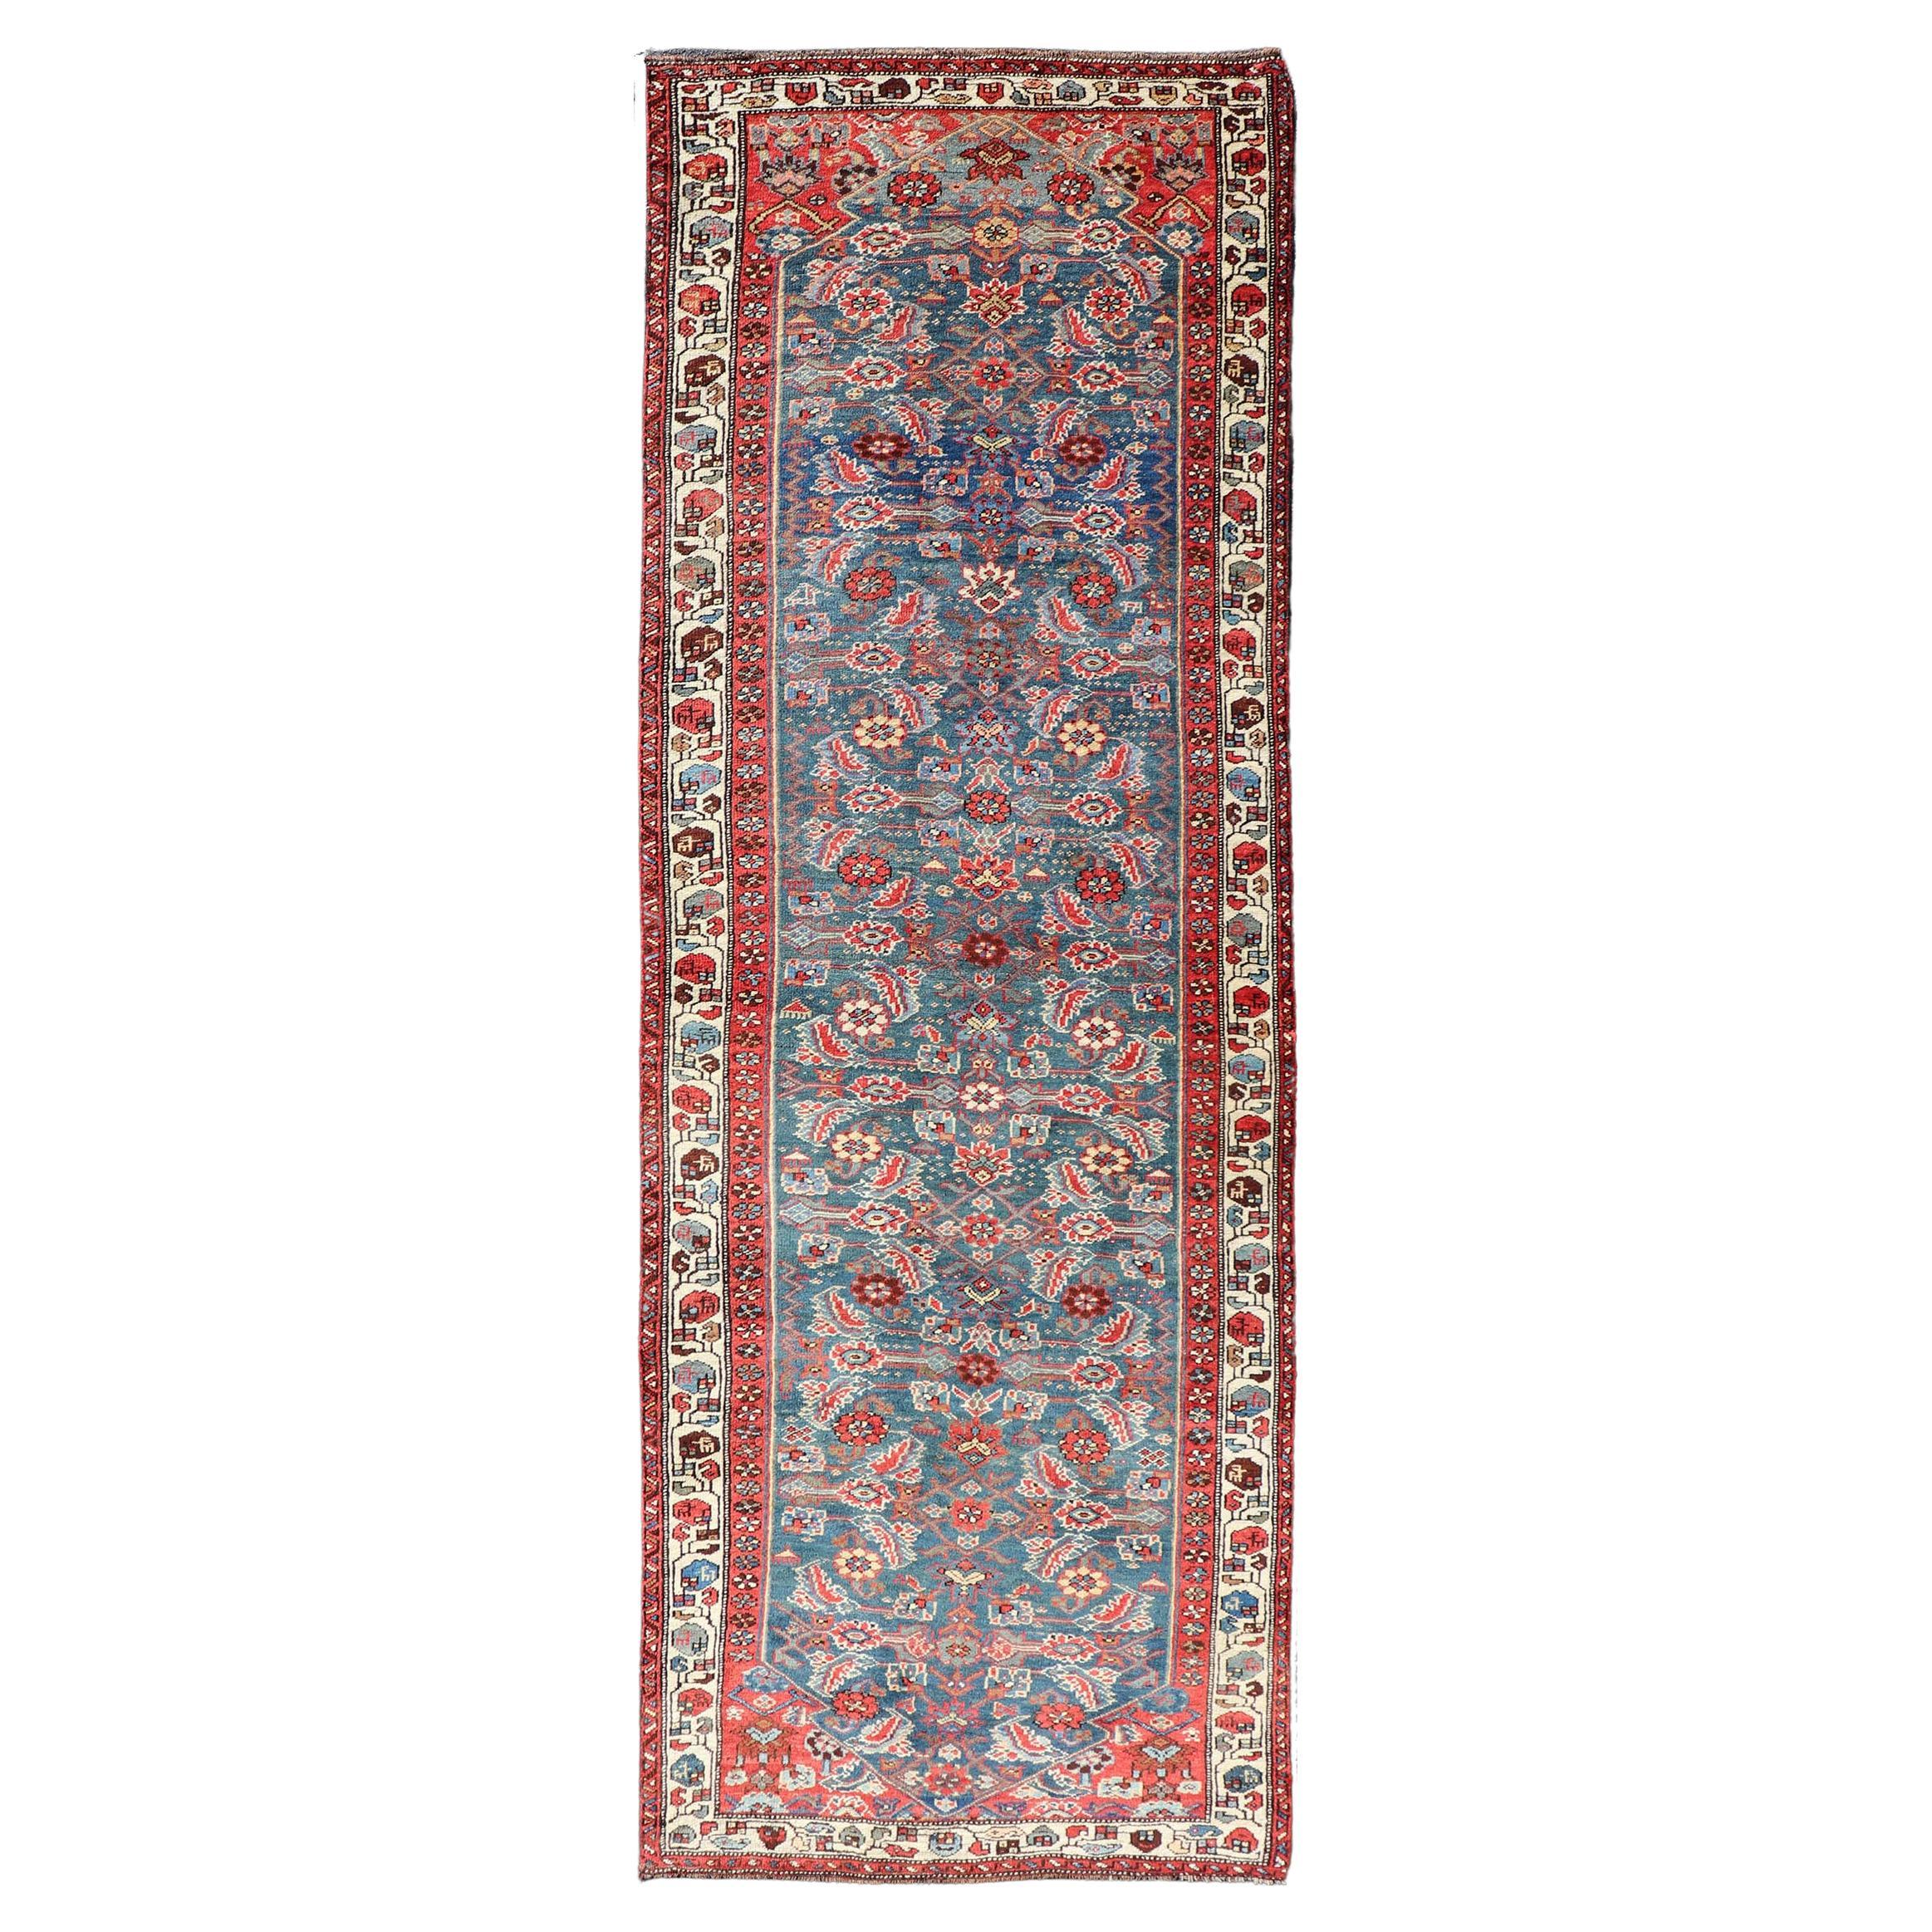 Antiker persischer Bidjar-Teppich mit großen Blumenmotiven in Blau, Rot und Elfenbein